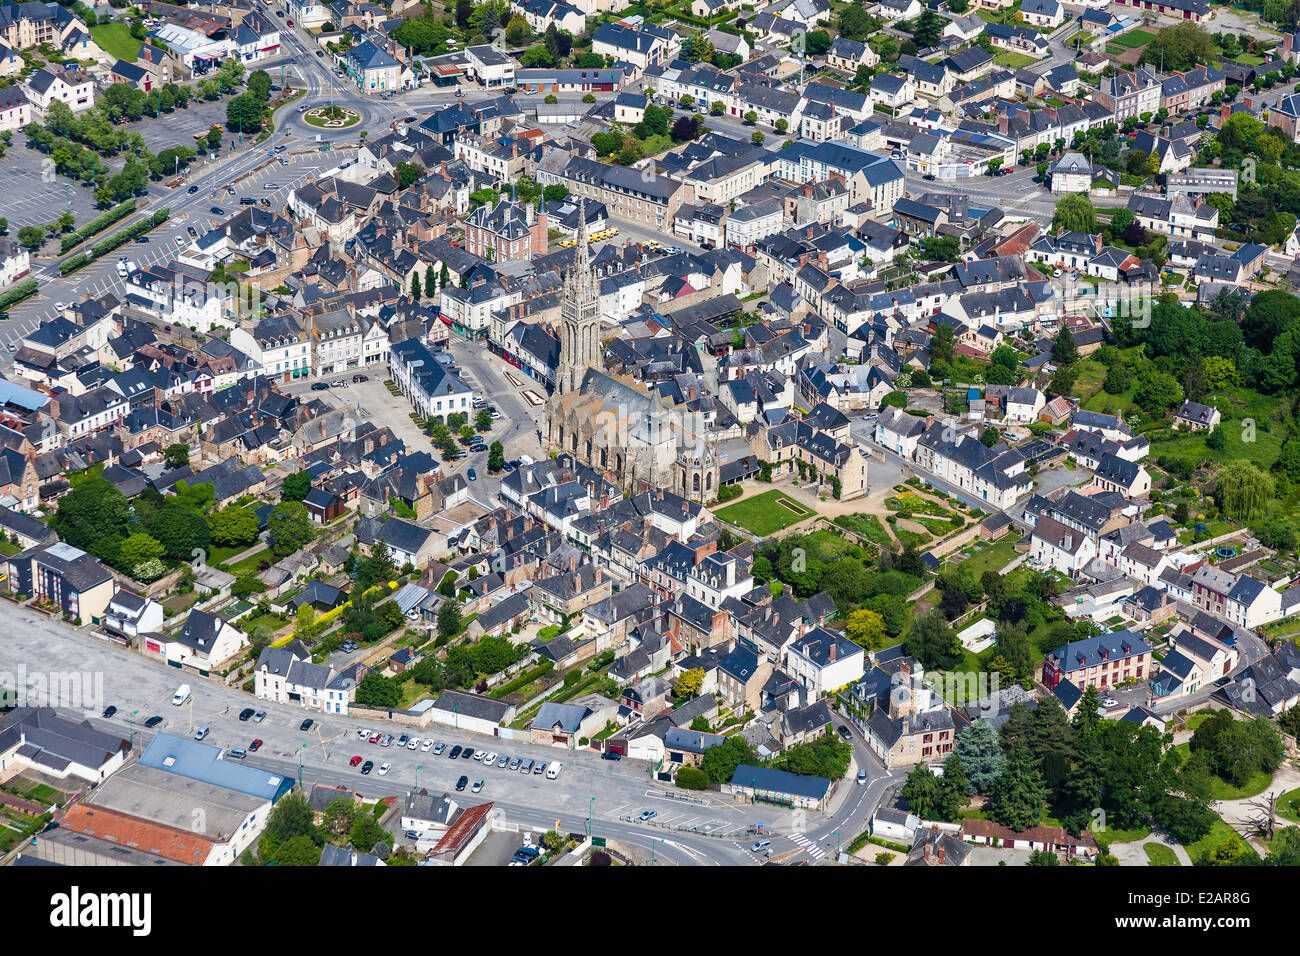 France, Ille et Vilaine, La Guerche de Bretagne (aerial view) Stock Photo